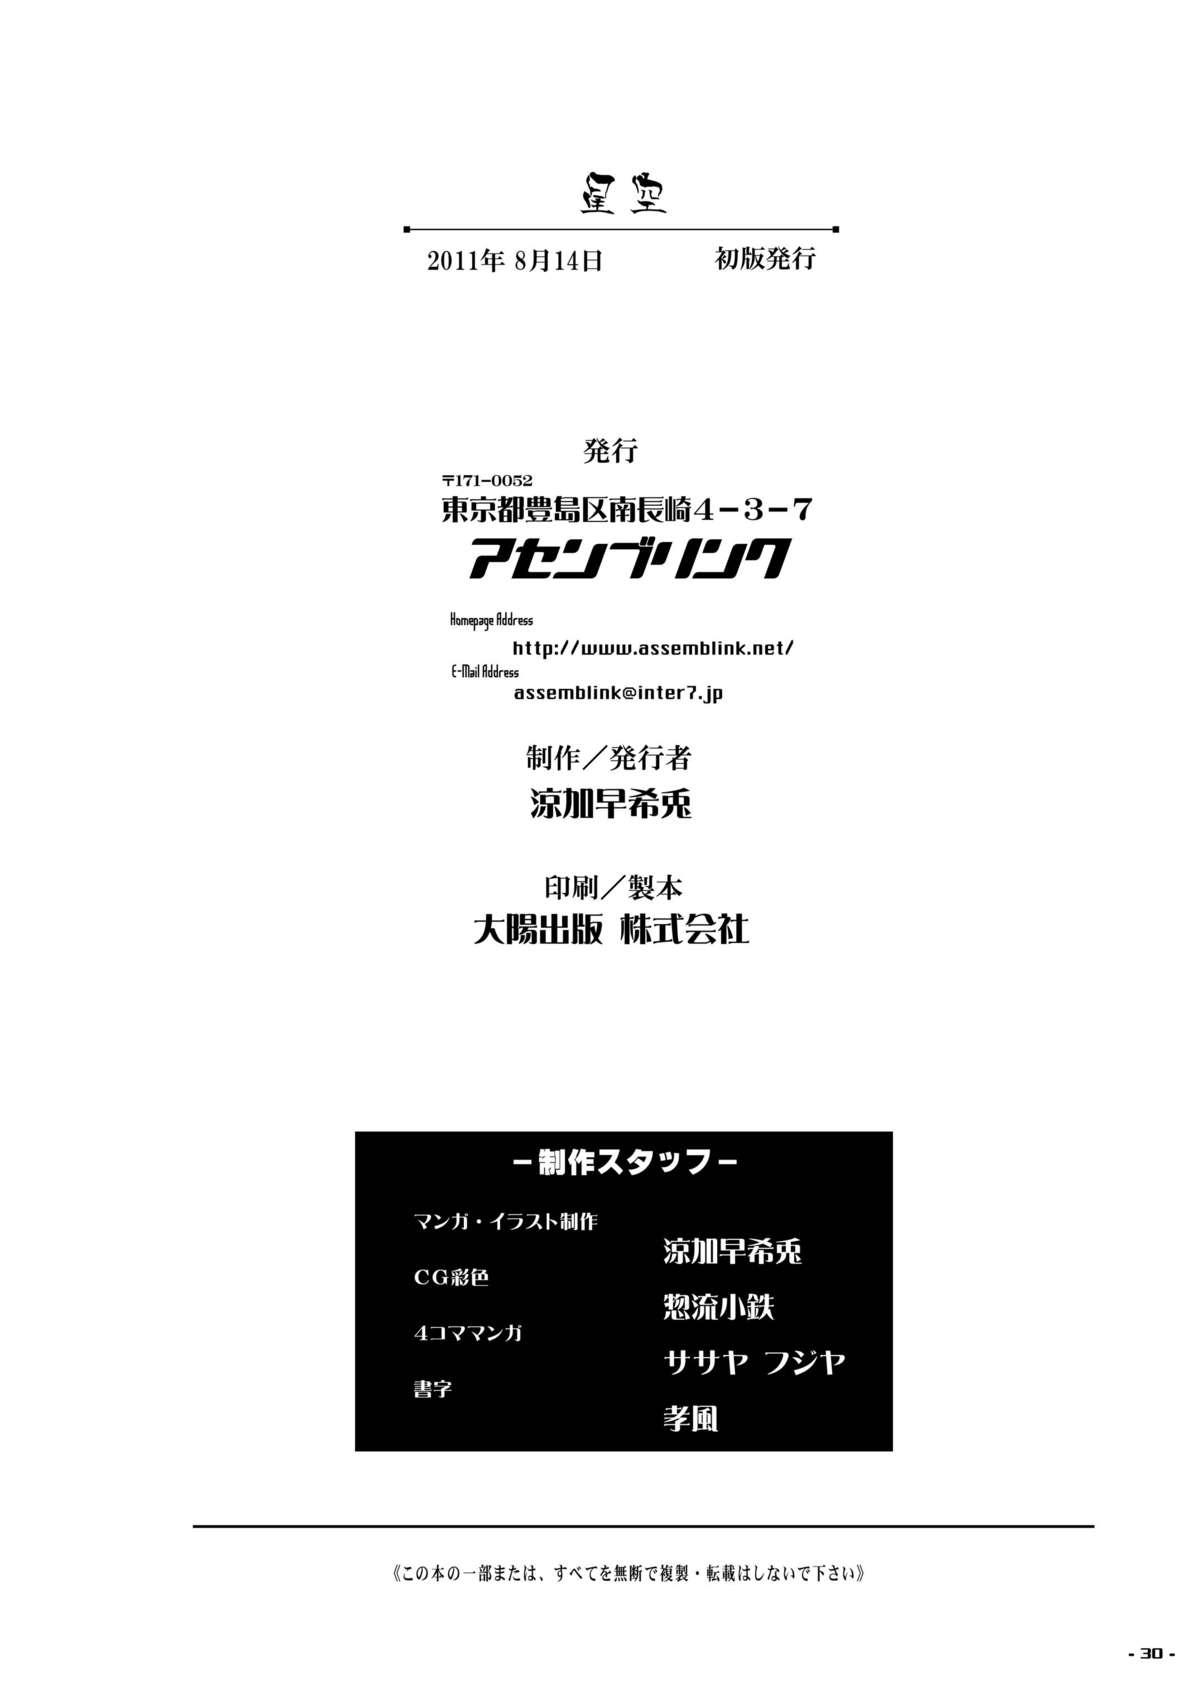 Mofos Hoshizora - Boku wa tomodachi ga sukunai Bwc - Page 29